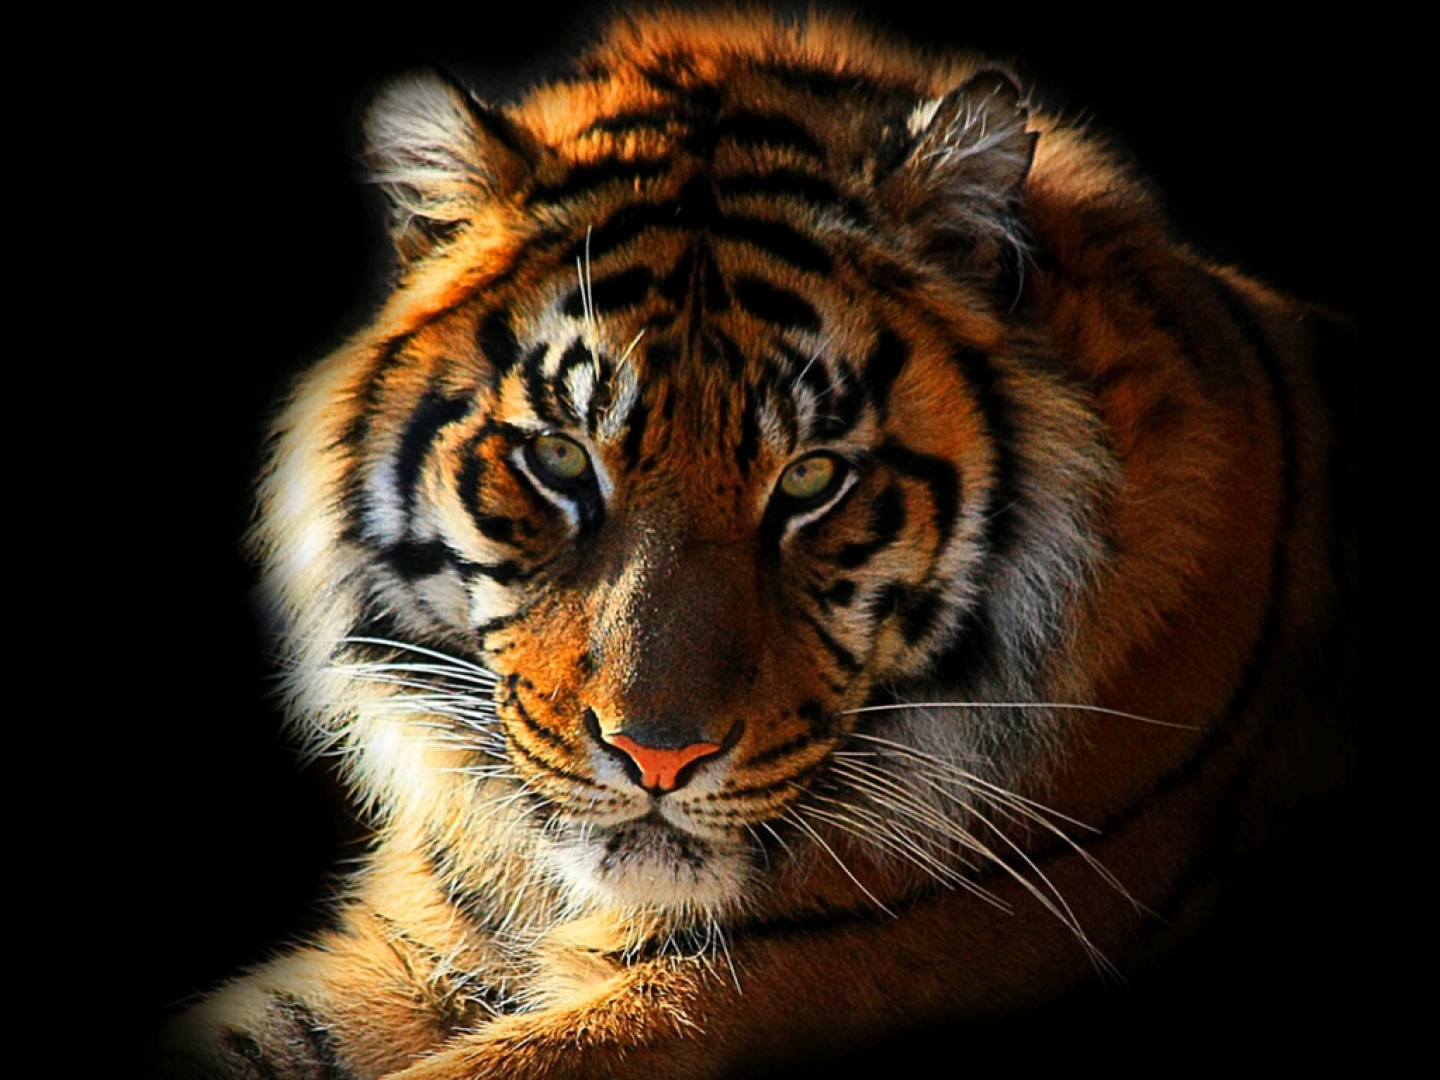 Tiger vs Lion | Tiger